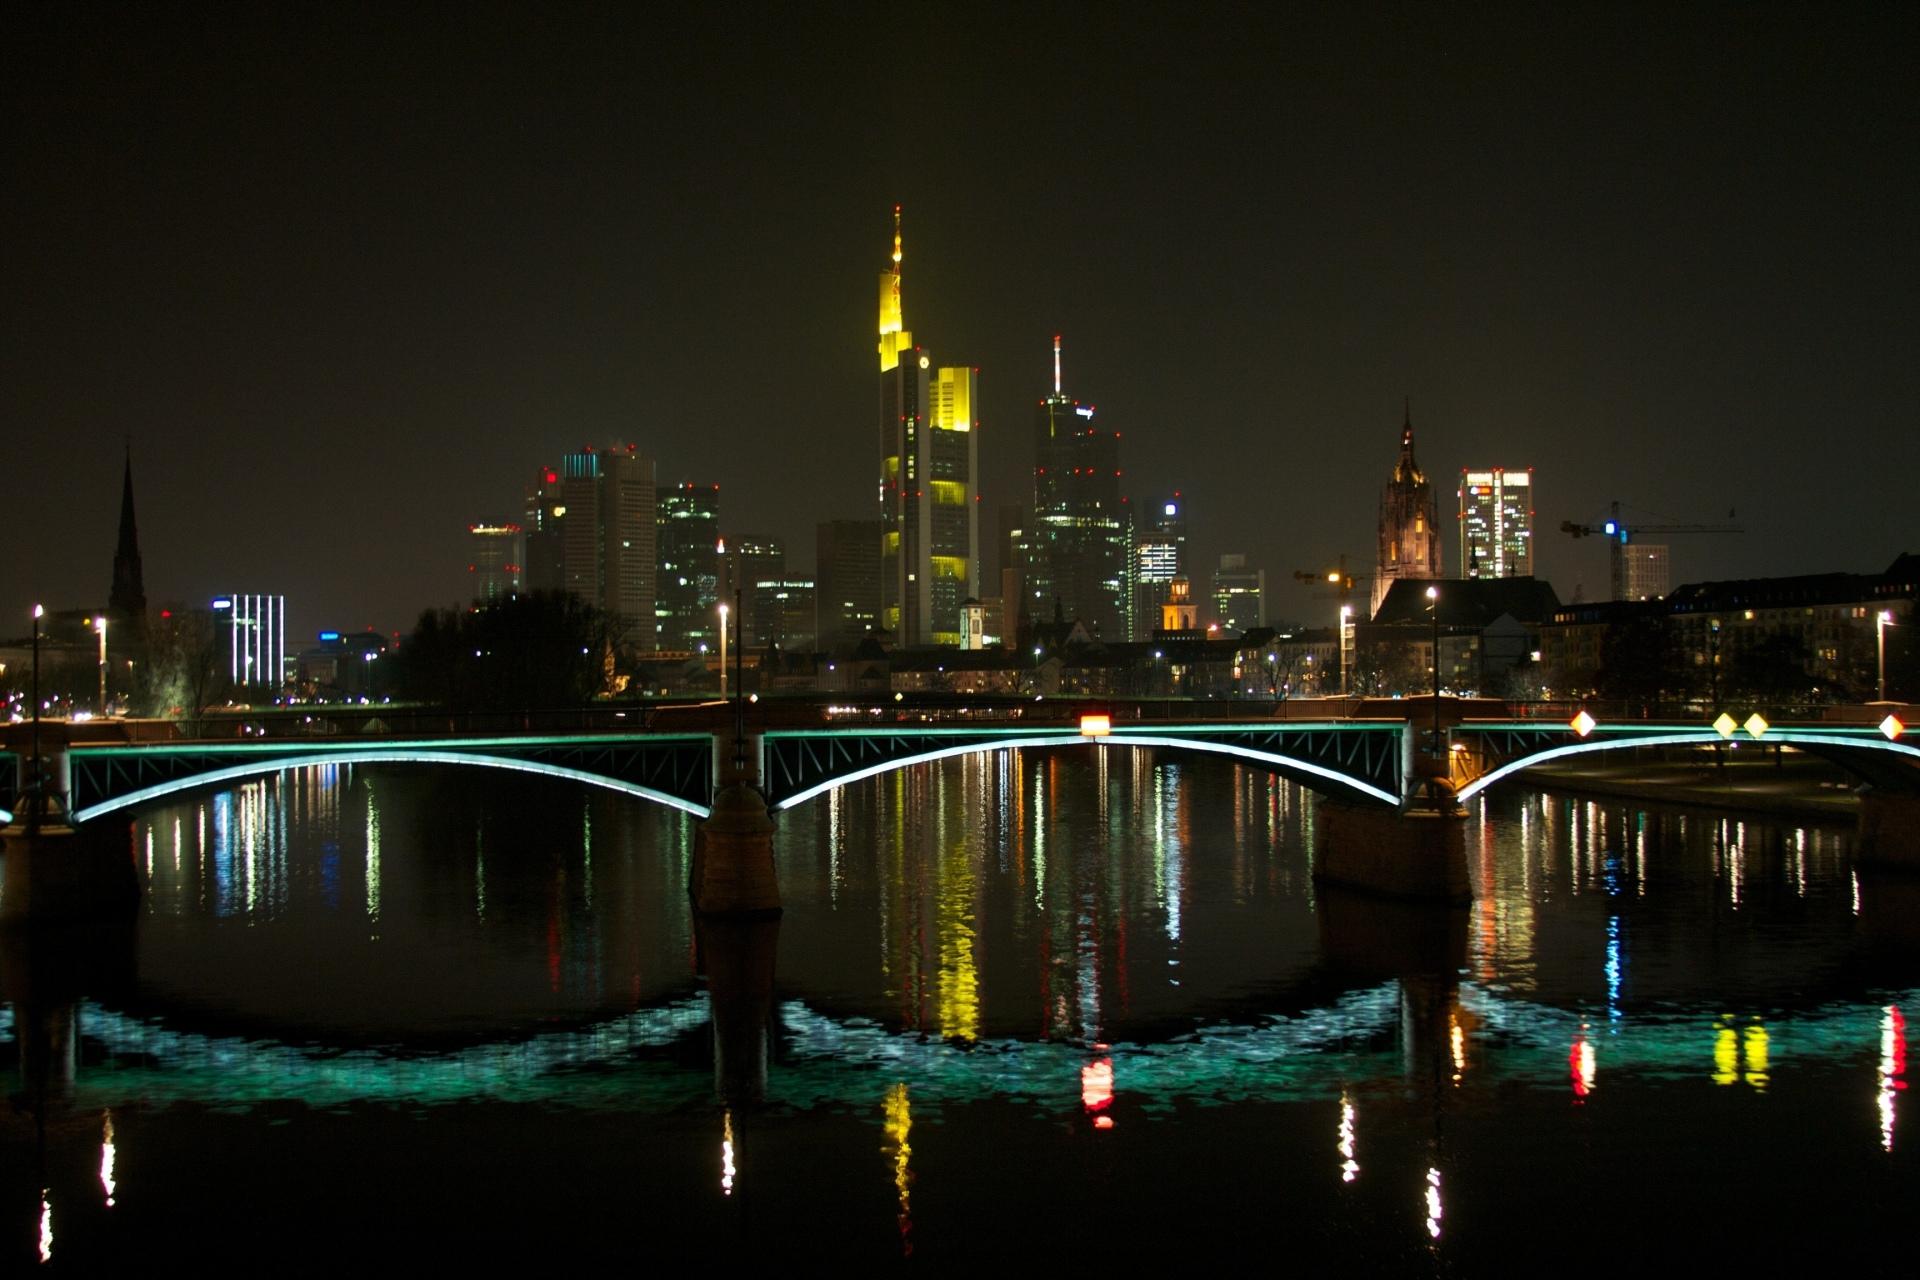 Frankfurt at 1024 x 1024 iPad size wallpapers HD quality